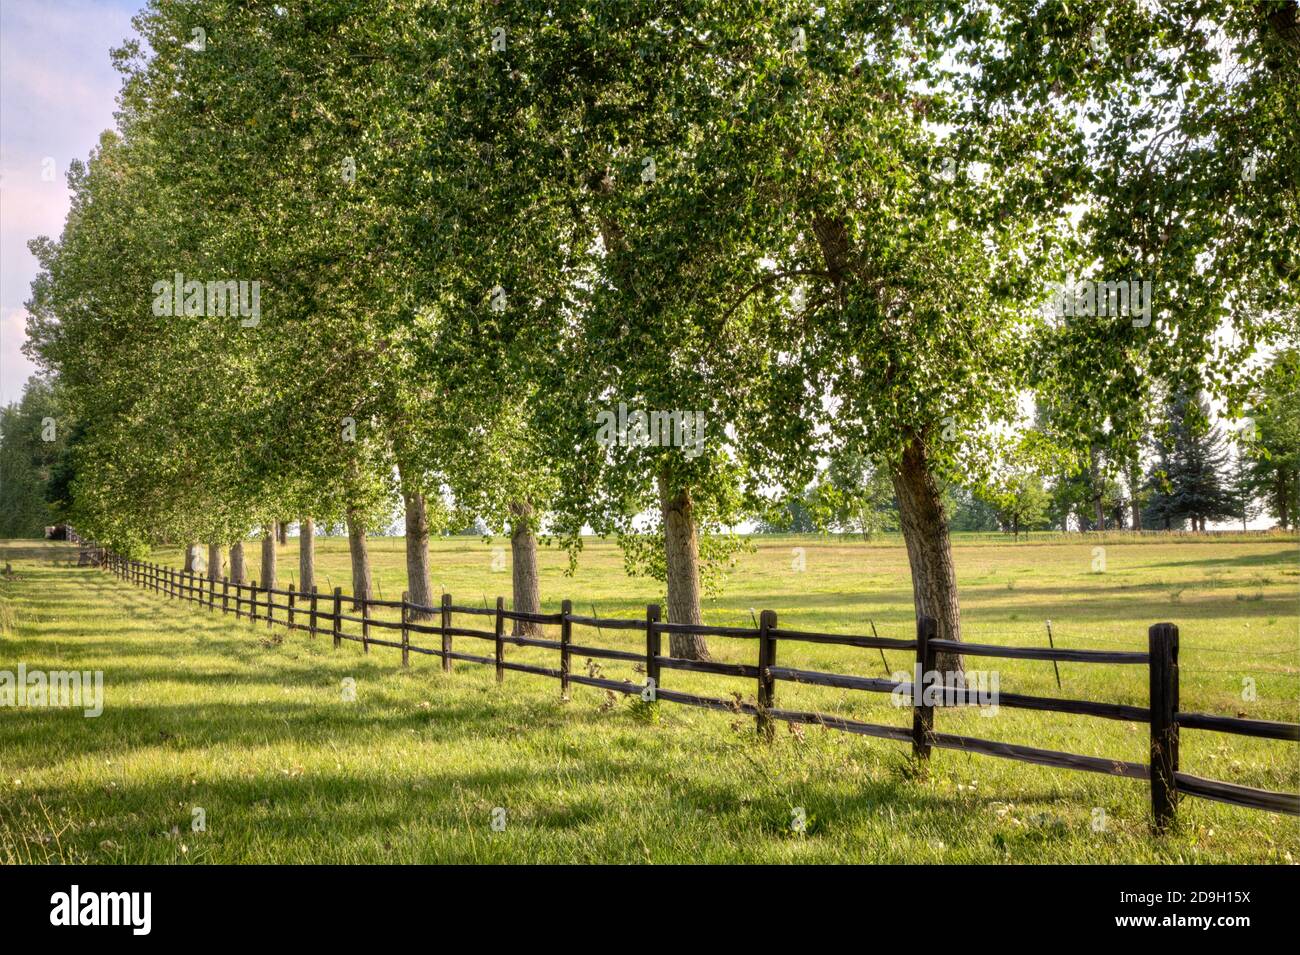 Ein Zaun grenzt an eine Wiese im späten Nachmittag Licht von einer hohen Reihe von Plains Cottonwood Bäume, die alle werfen lange Schatten unterstützt. Stockfoto